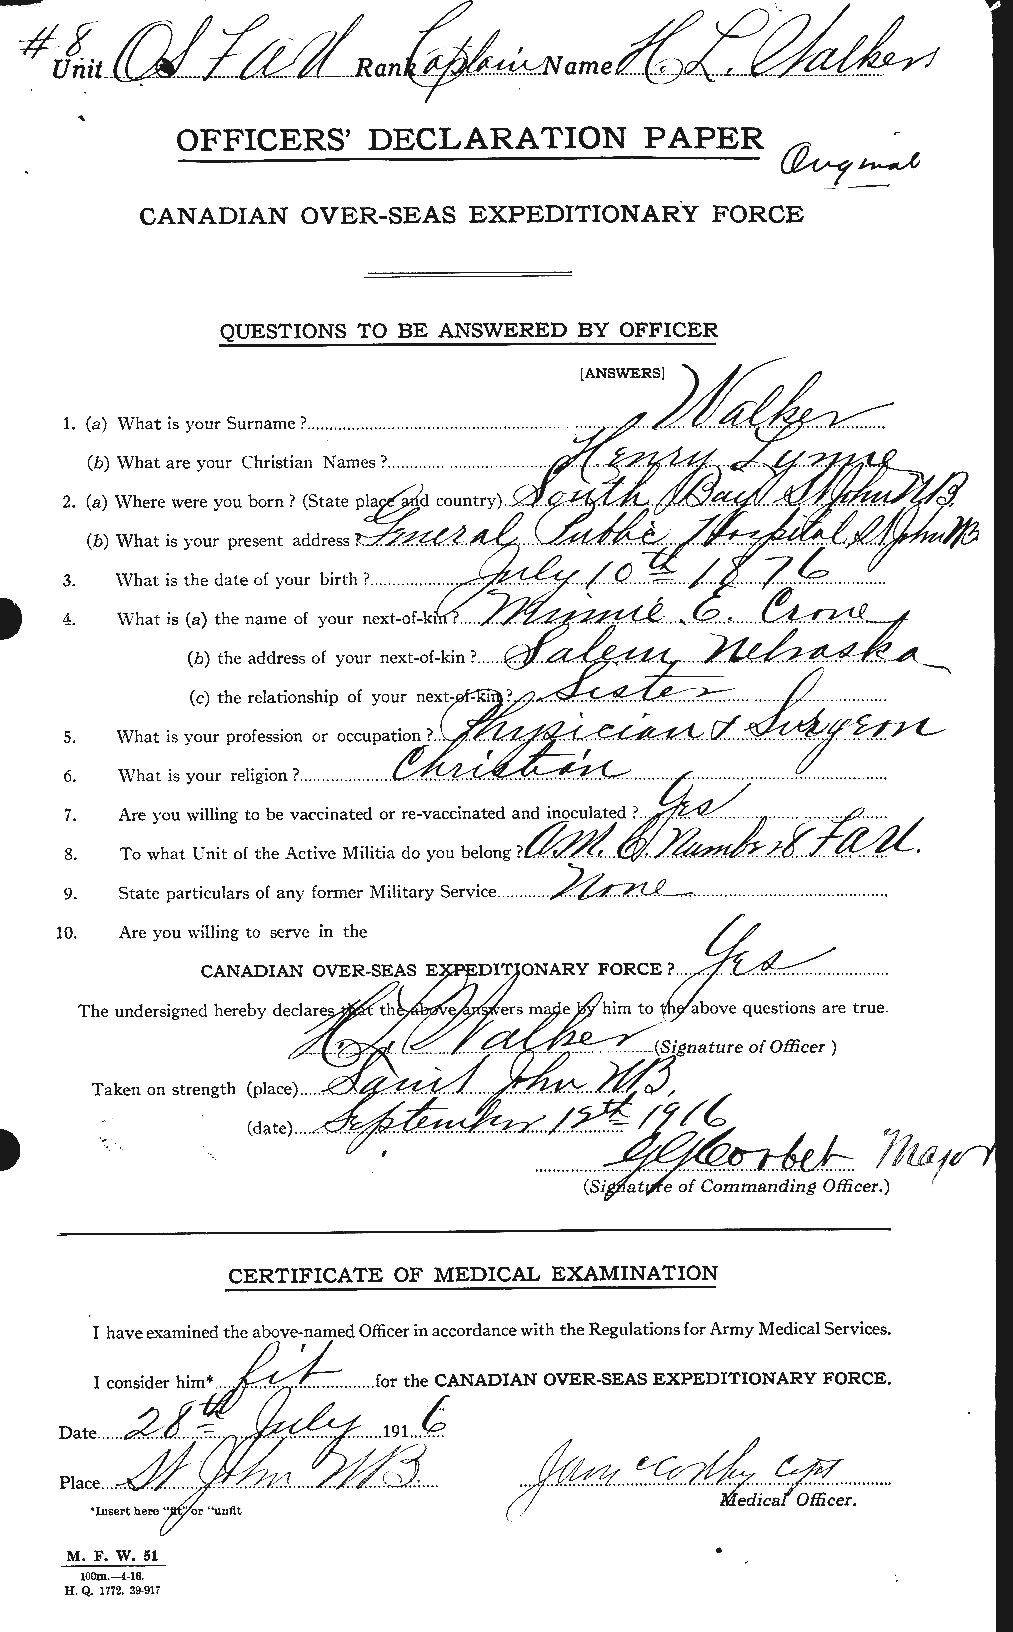 Dossiers du Personnel de la Première Guerre mondiale - CEC 652891a